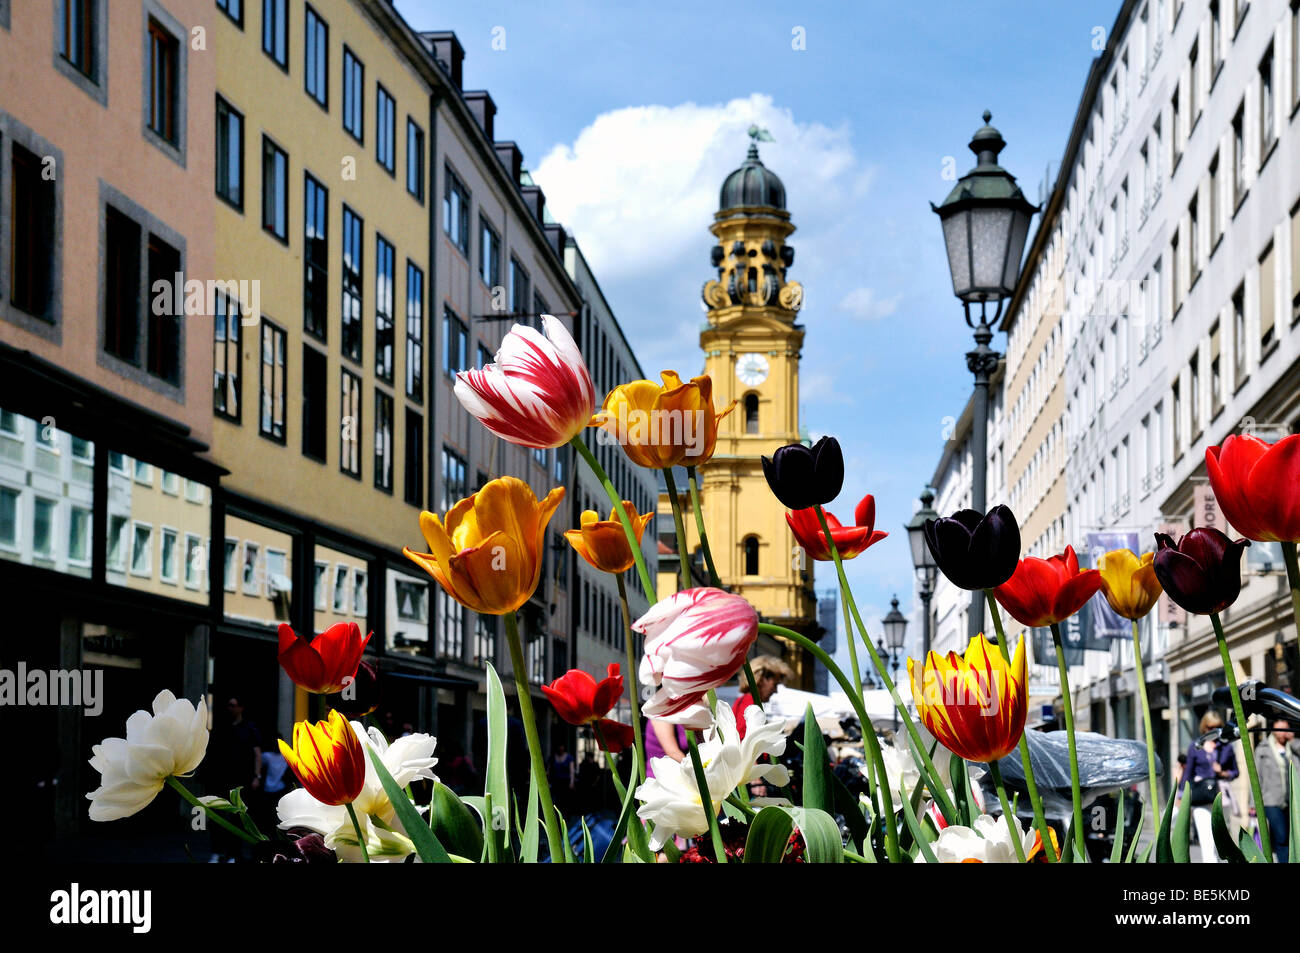 Theatiner church, flowers in Theatinerstreet, Munich, Bavaria, Germany, Europe Stock Photo